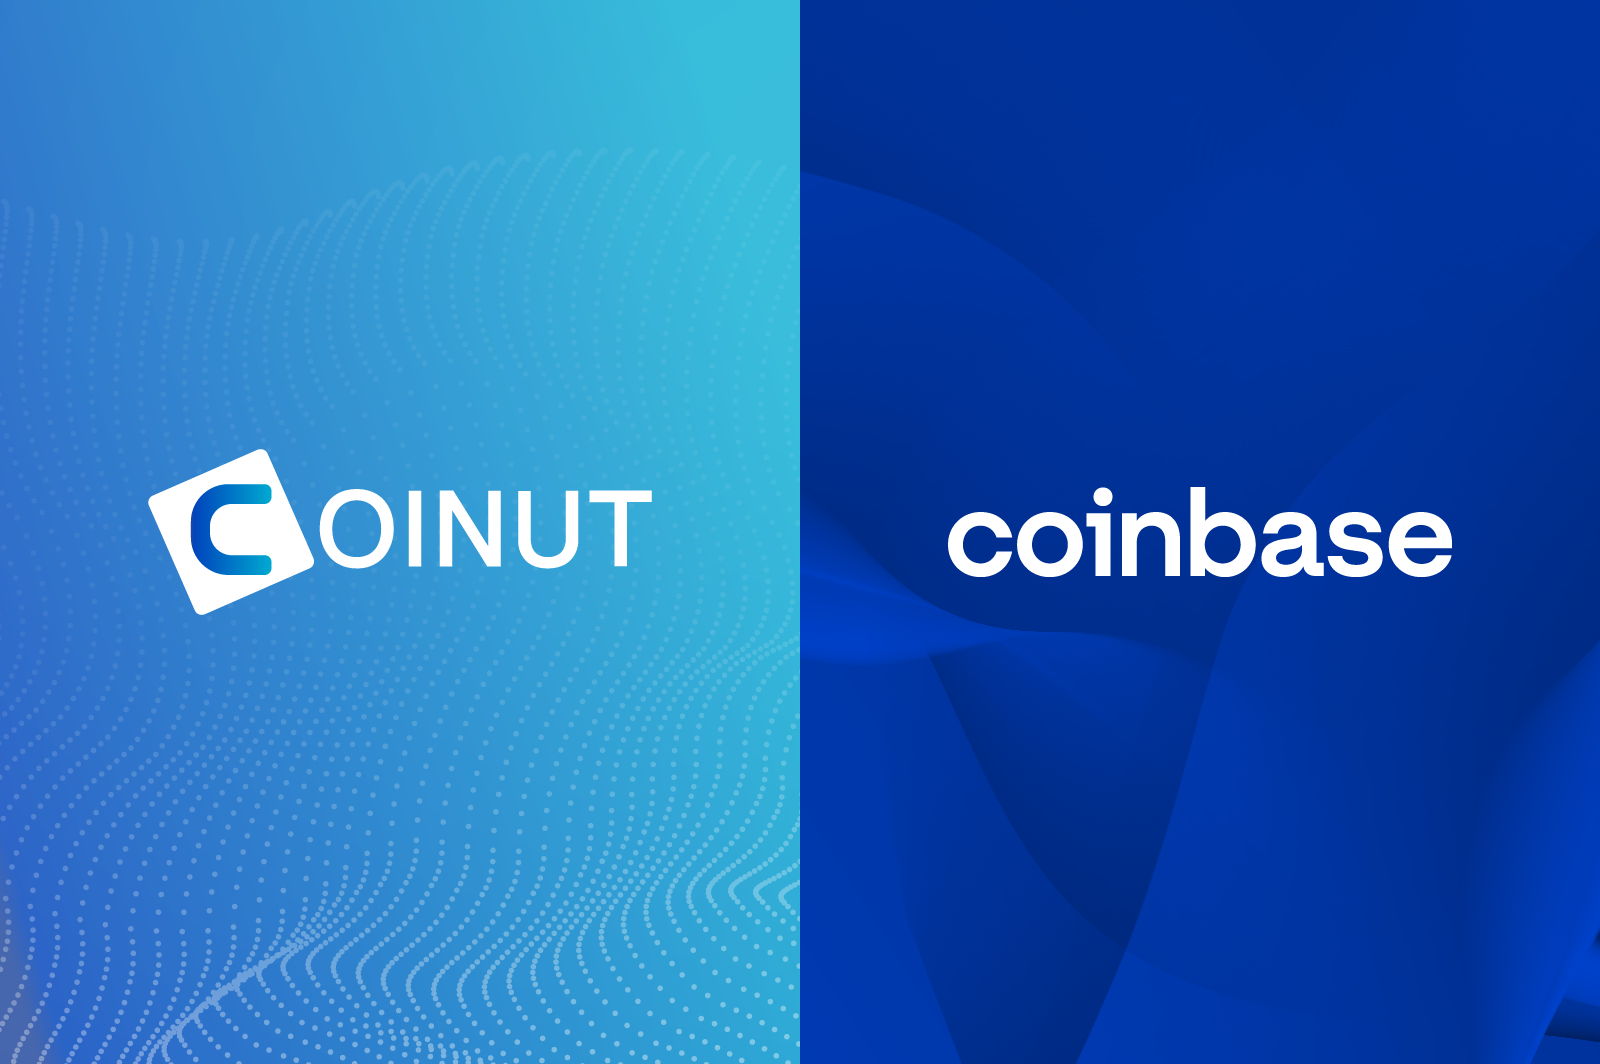 Coinut x Coinbase Partnership